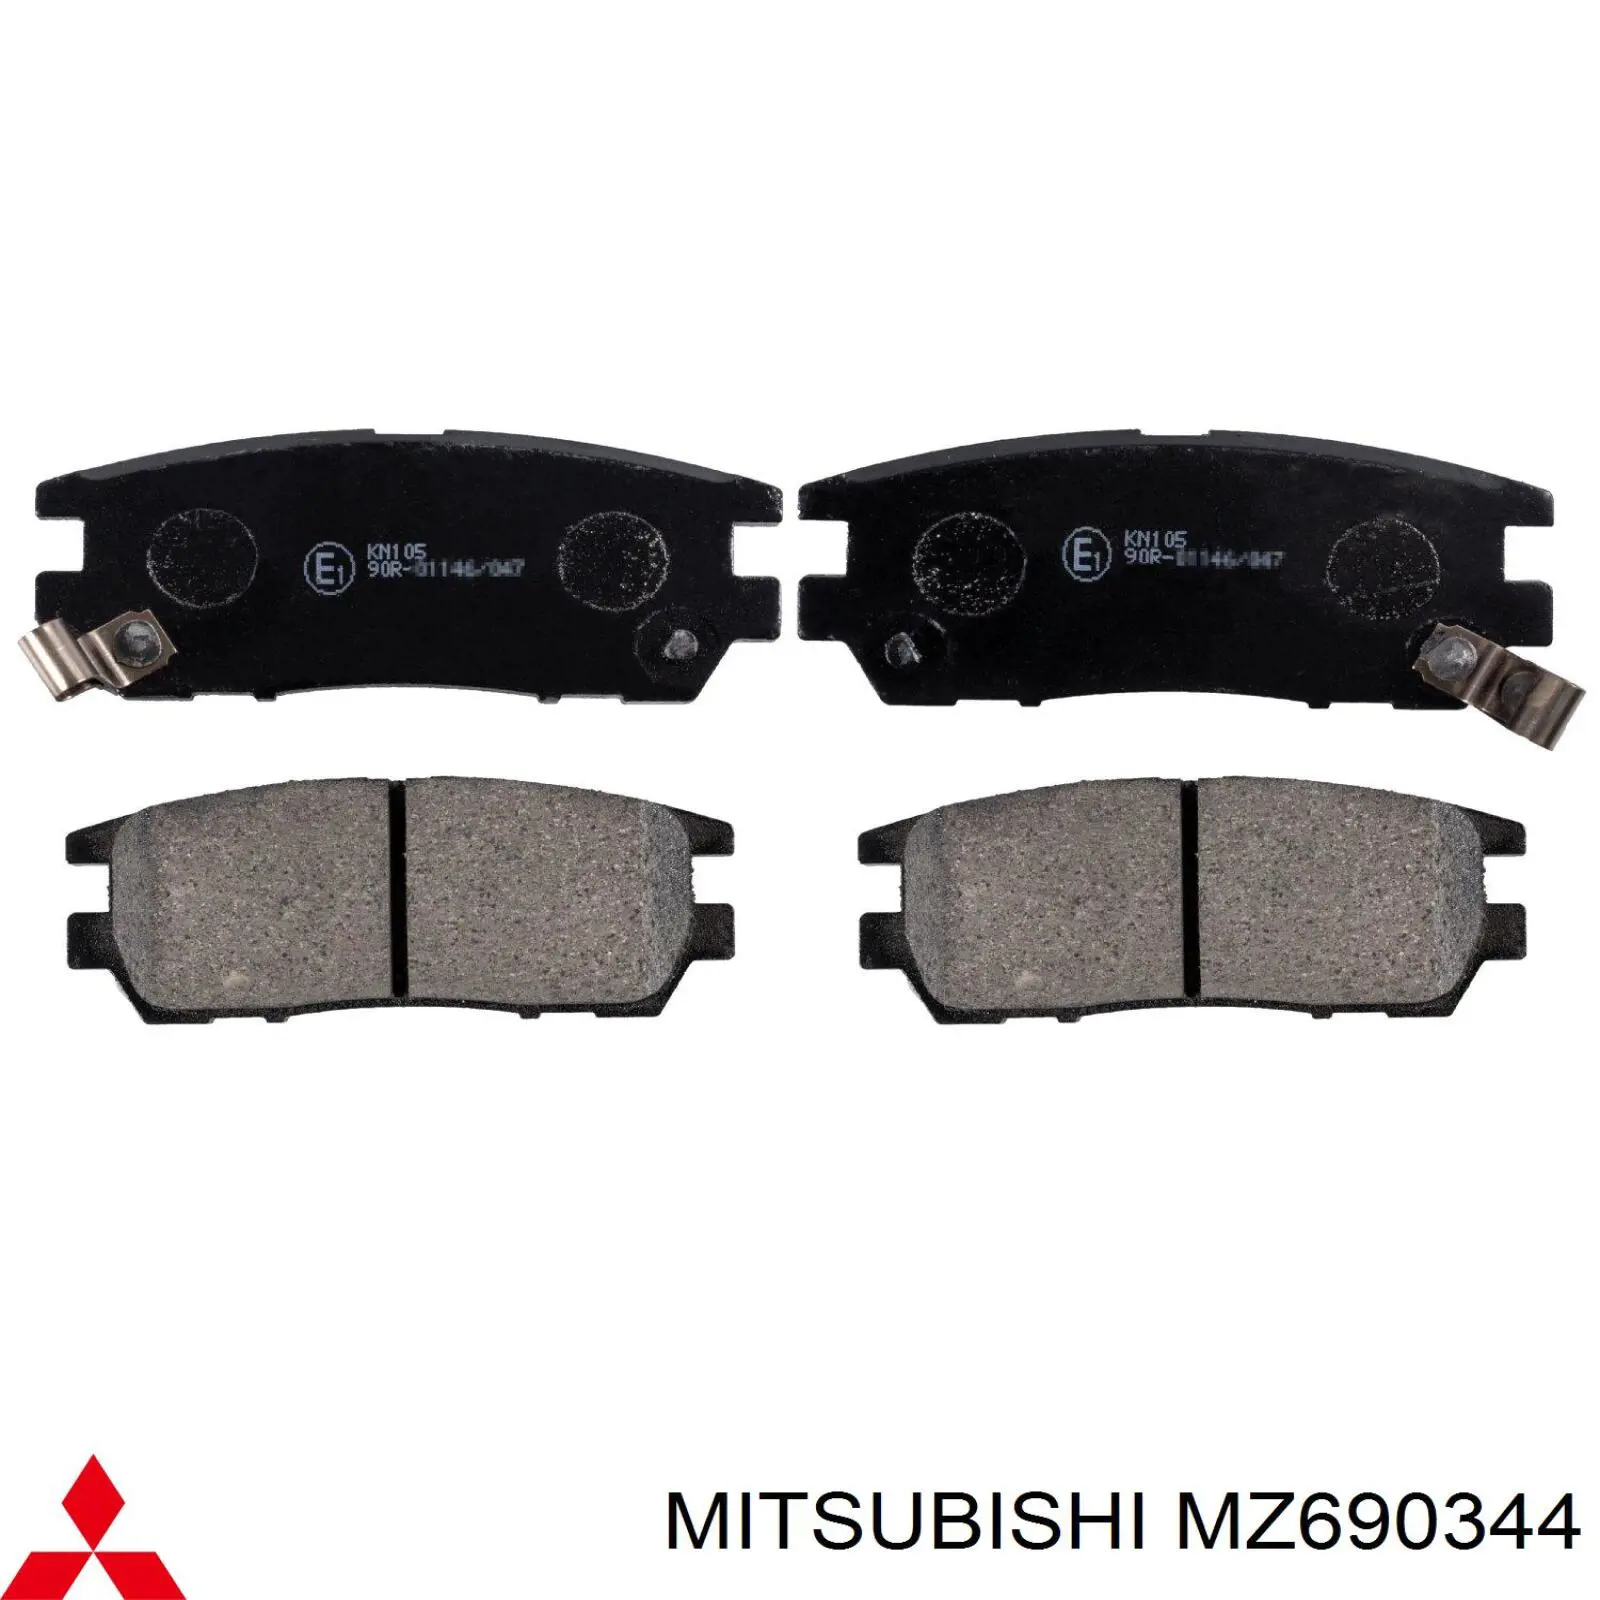 MZ690344 Mitsubishi колодки тормозные задние дисковые